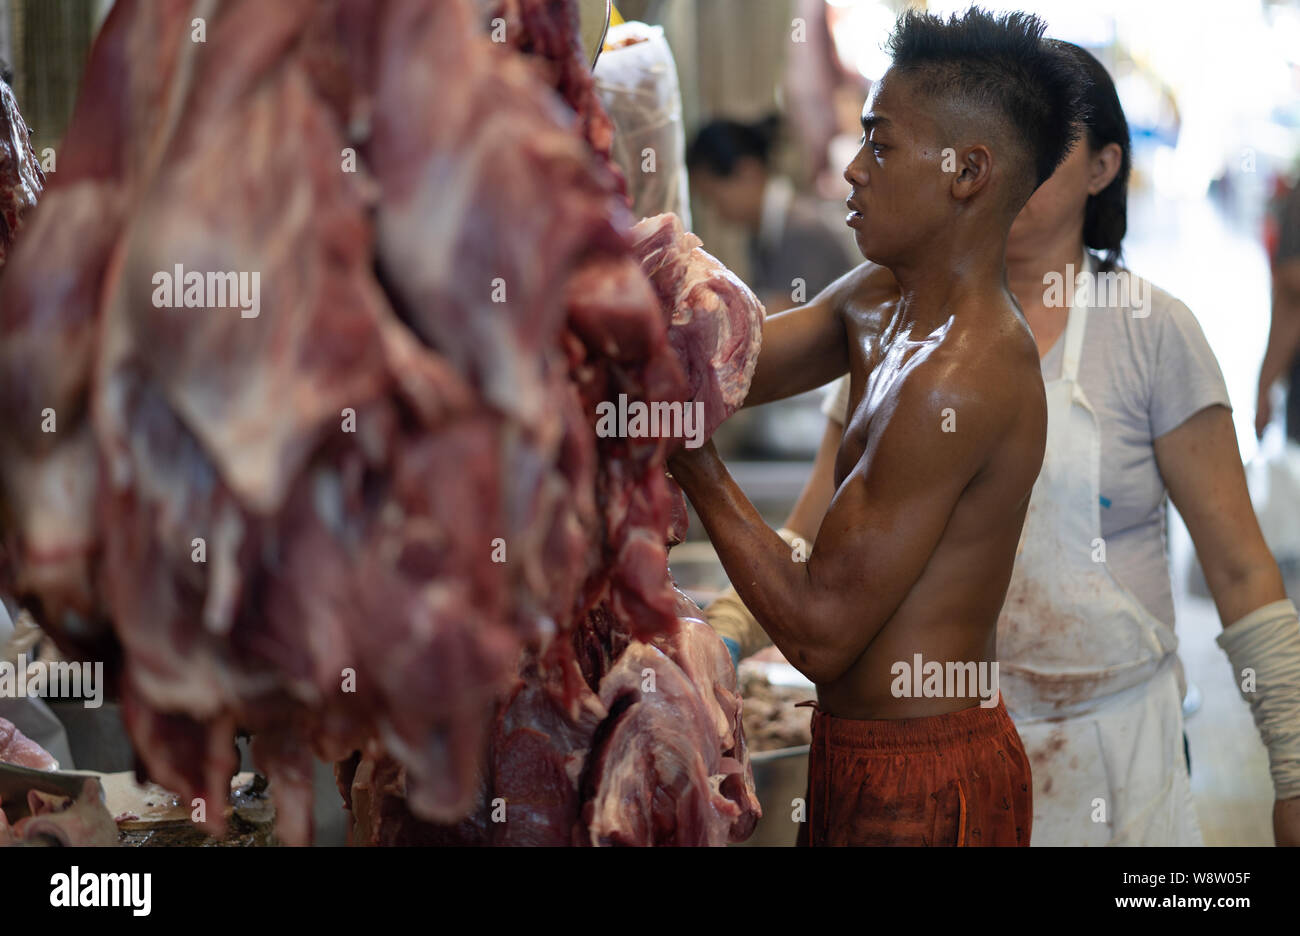 Un jeune garçon s'occupe de carcasses de viande suspendues dans le marché du carbone, Cebu City,Philippines Banque D'Images